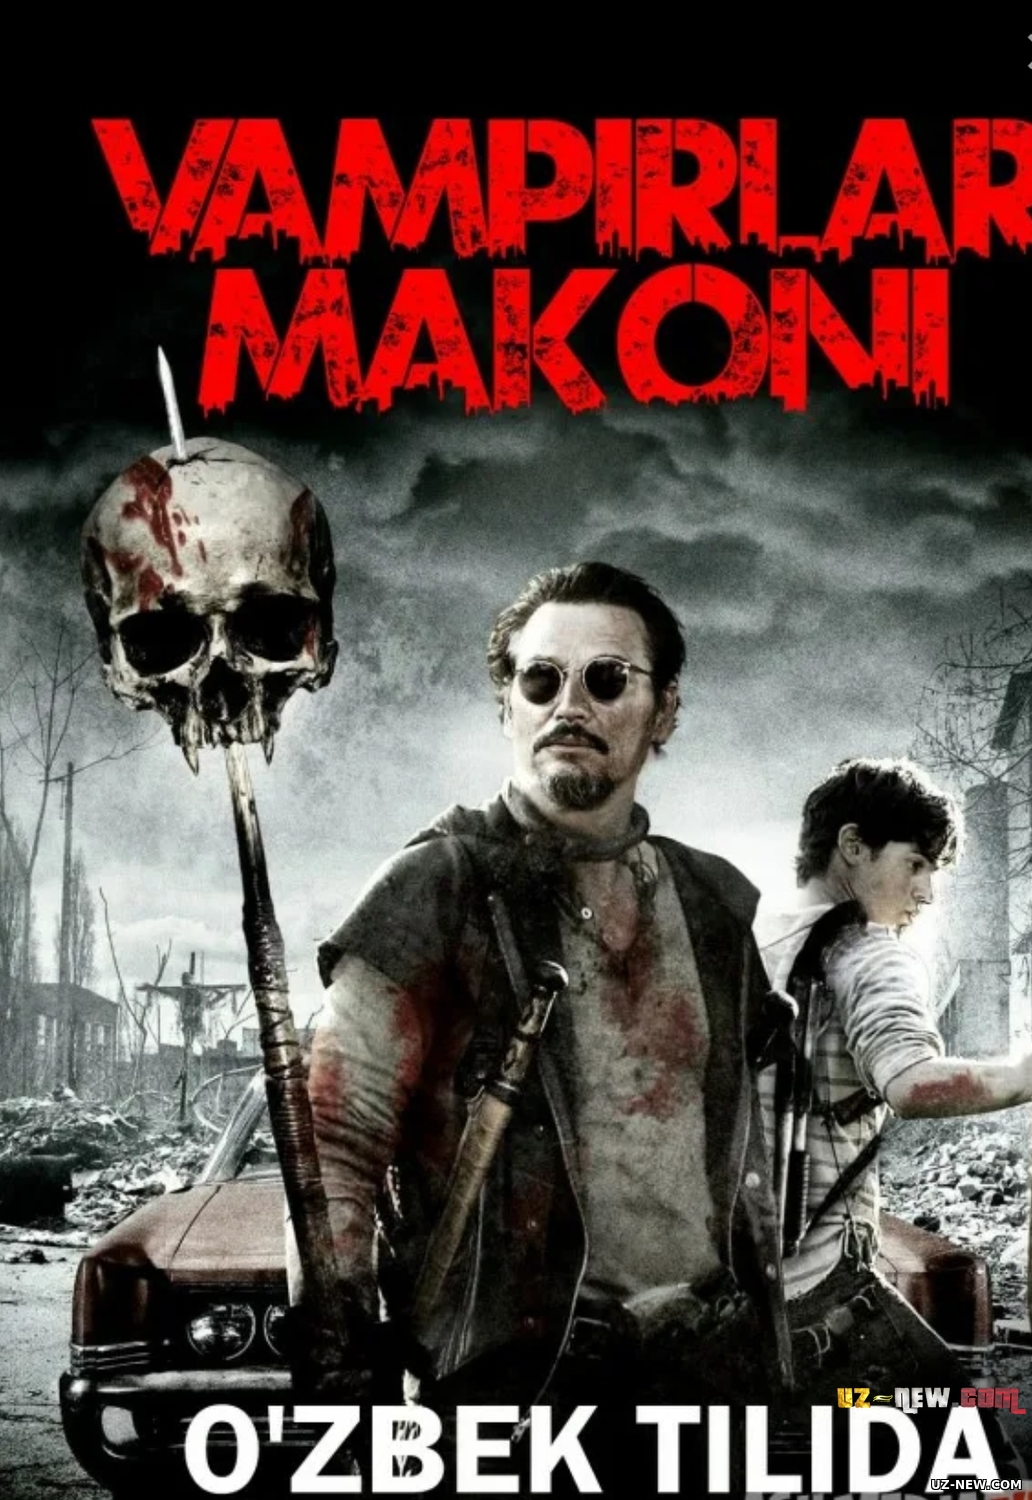 Vampirlar makoni (Uzbek tilida 2010 kino skachat)